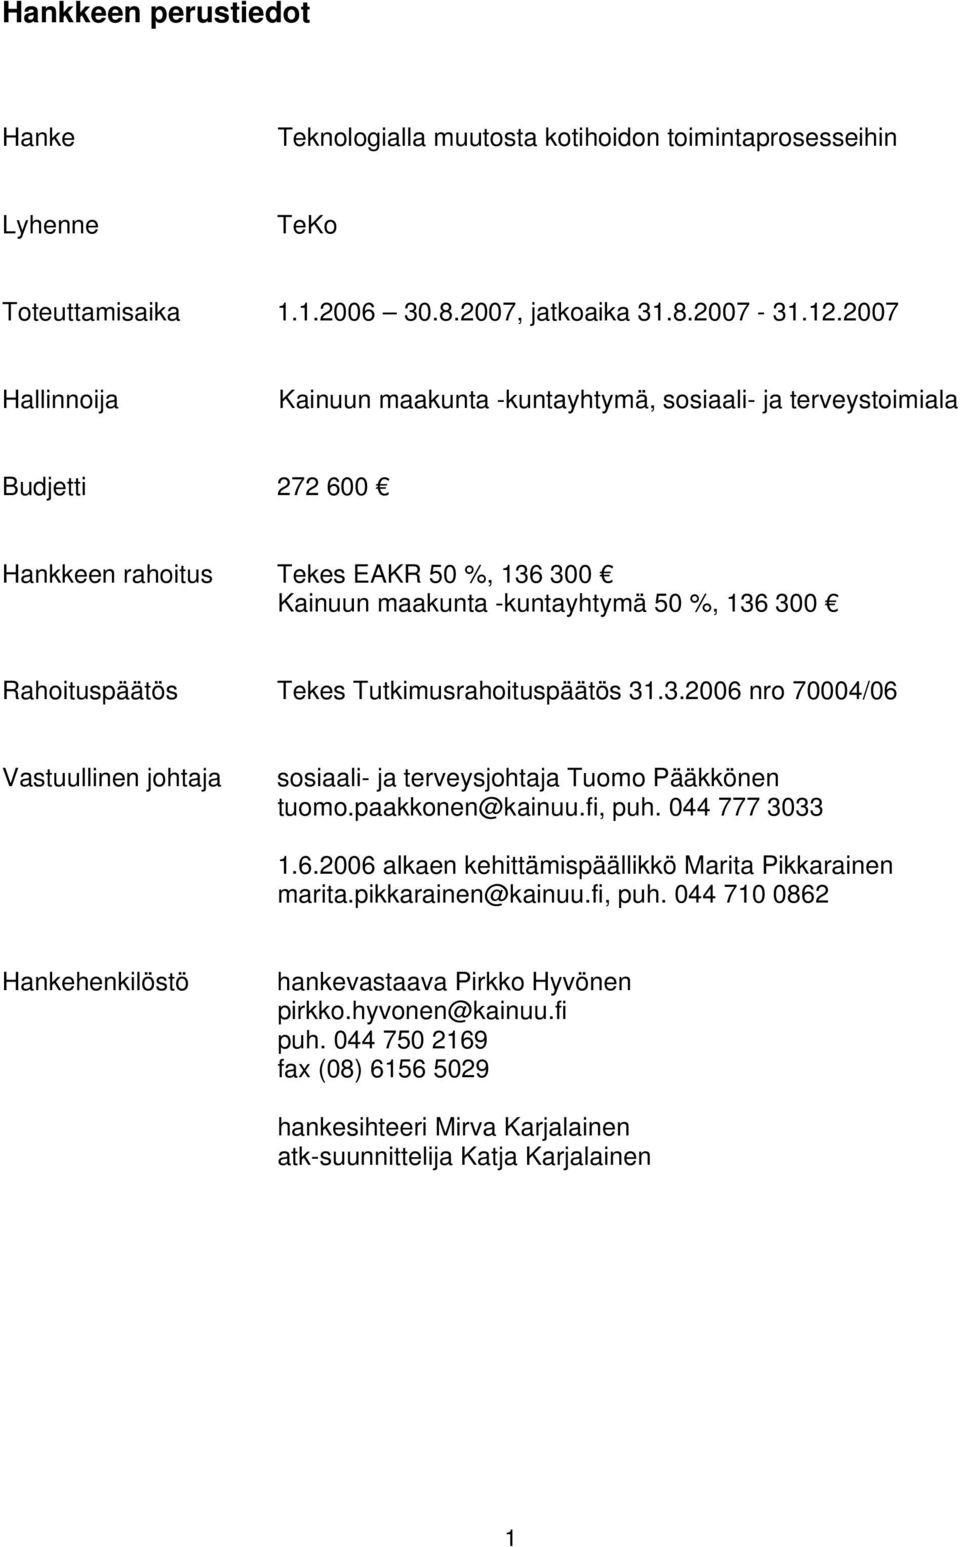 Tekes Tutkimusrahoituspäätös 31.3.2006 nro 70004/06 Vastuullinen johtaja sosiaali- ja terveysjohtaja Tuomo Pääkkönen tuomo.paakkonen@kainuu.fi, puh. 044 777 3033 1.6.2006 alkaen kehittämispäällikkö Marita Pikkarainen marita.